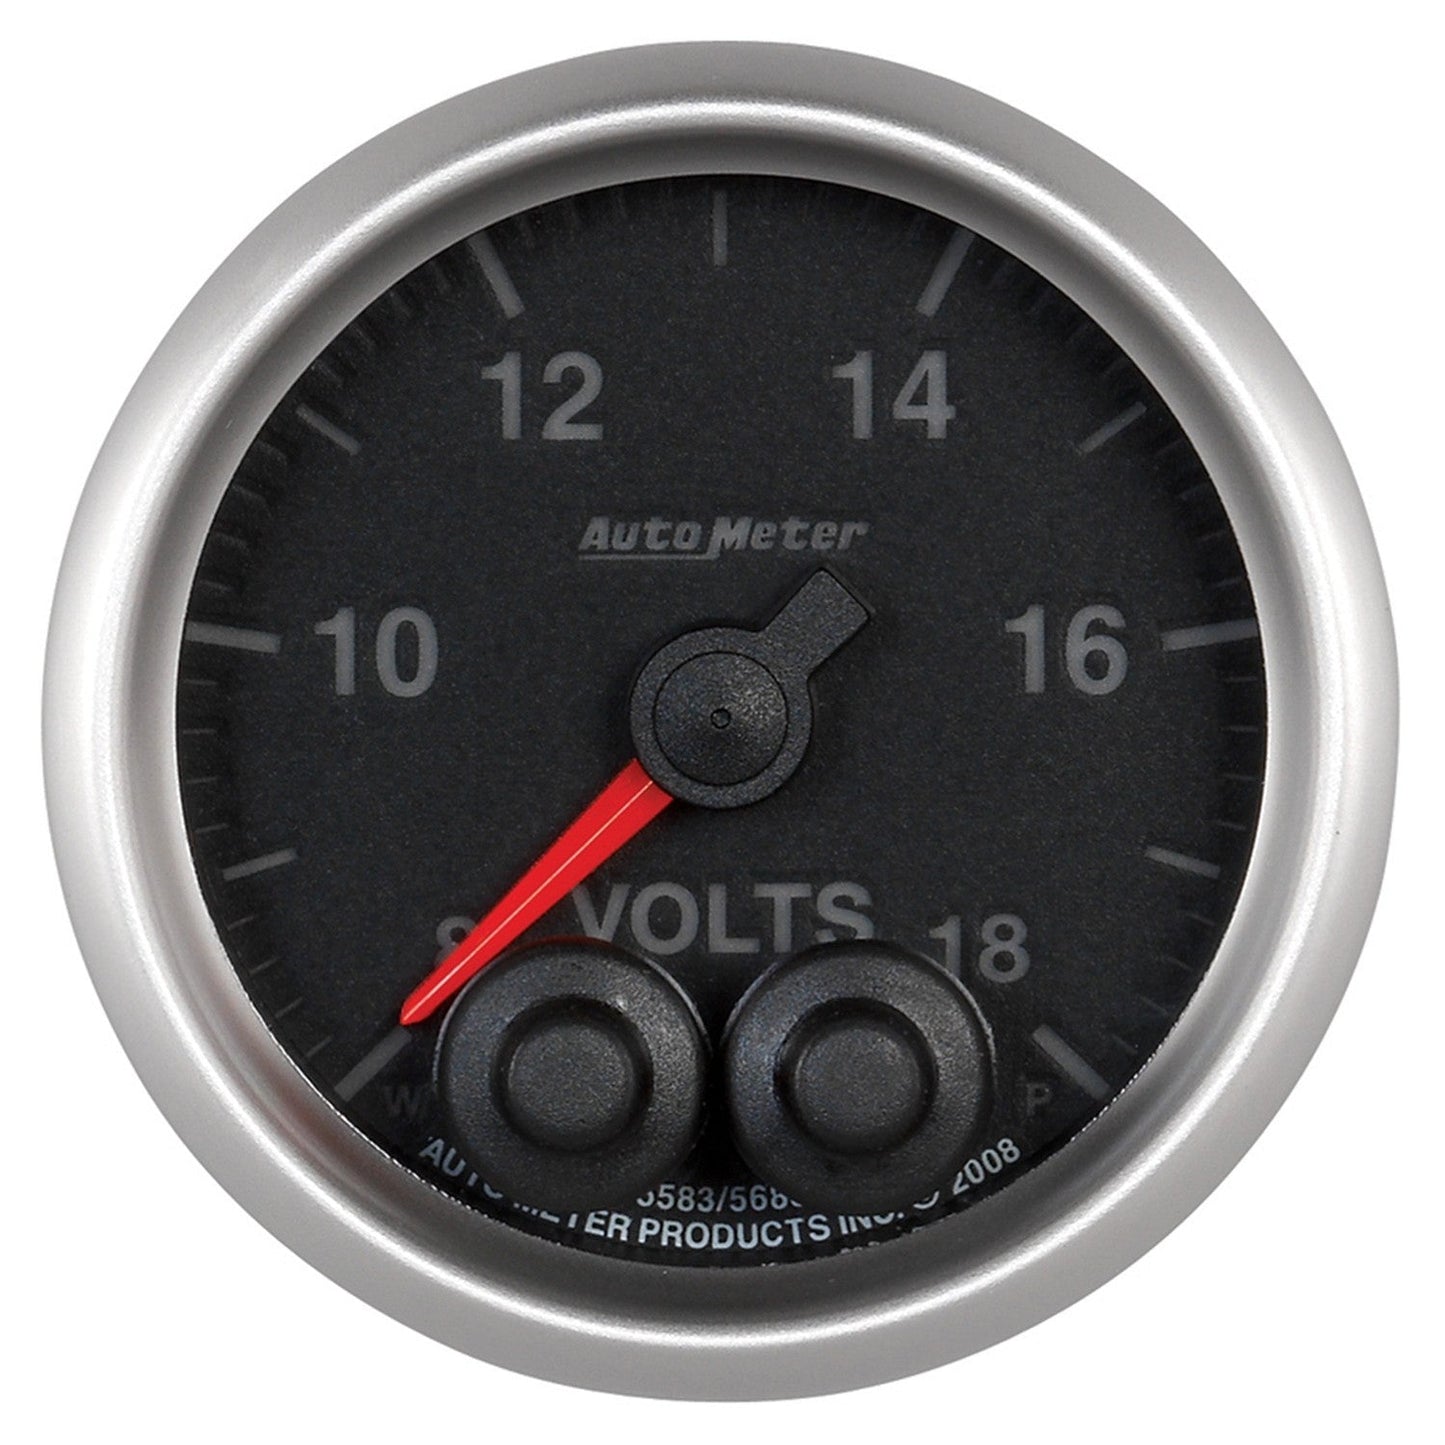 AutoMeter - 2-1/16" VOLTMETER, 8-18V, DIGITAL STEPPER MOTOR, ELITE (5683)